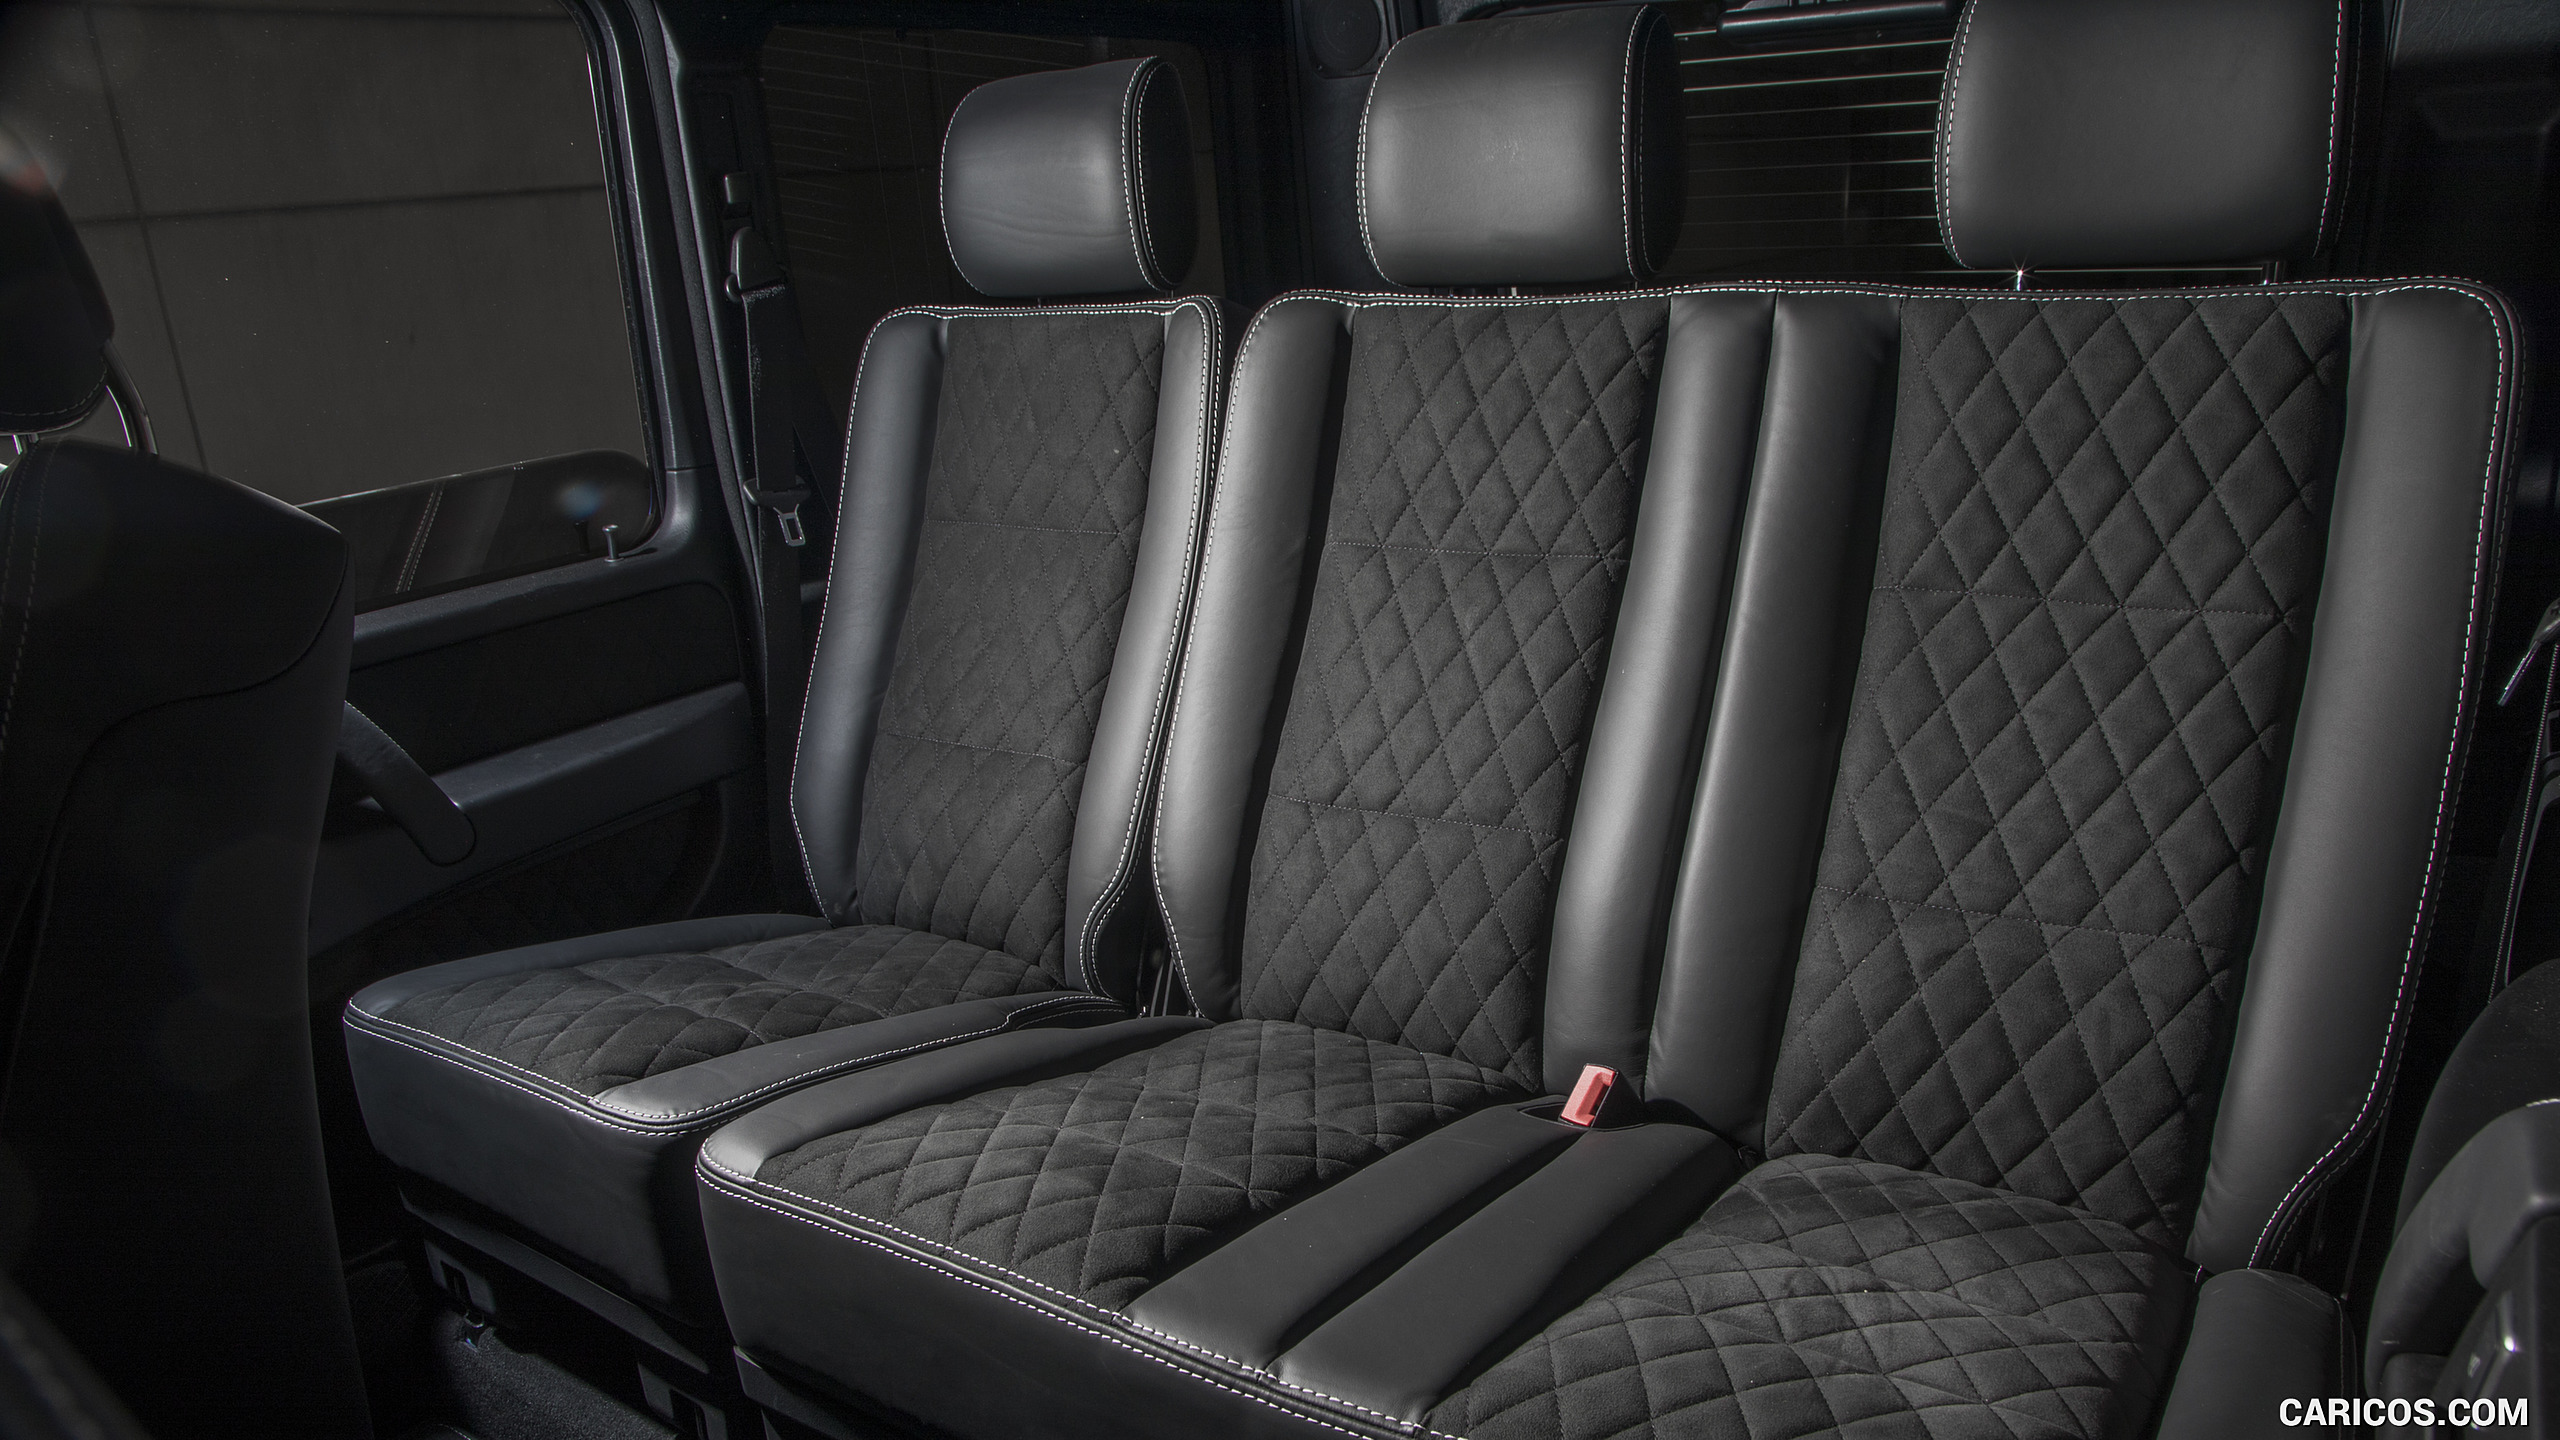 2017 Mercedes-Benz G550 4x4² (US-Spec) - Interior, Rear Seats, #44 of 45